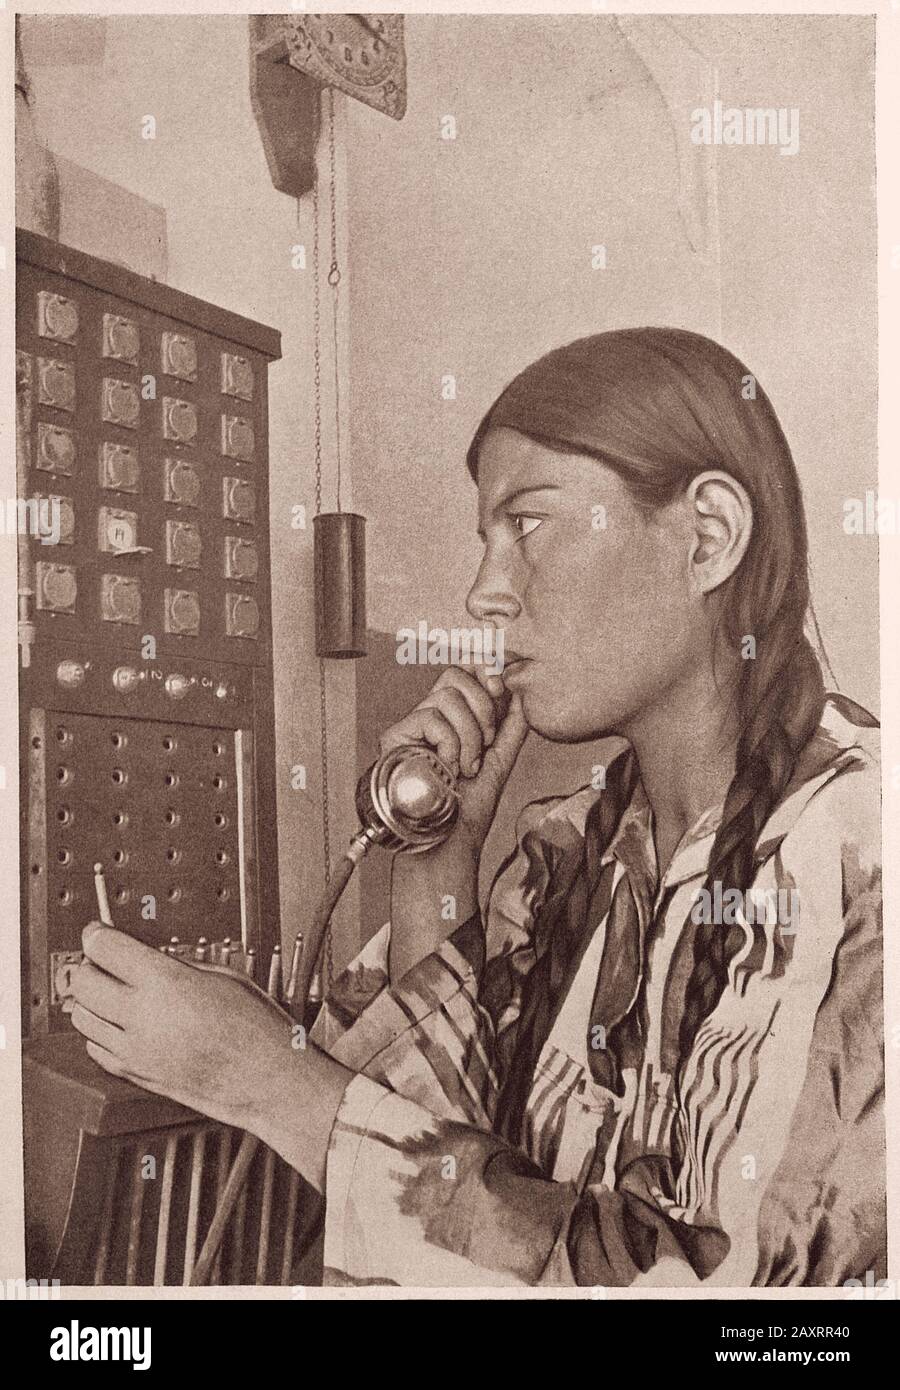 La vida en la Unión Soviética en 1930. Del libro de propaganda soviético. Operador telefónico uzbeko en el trabajo. Foto de stock